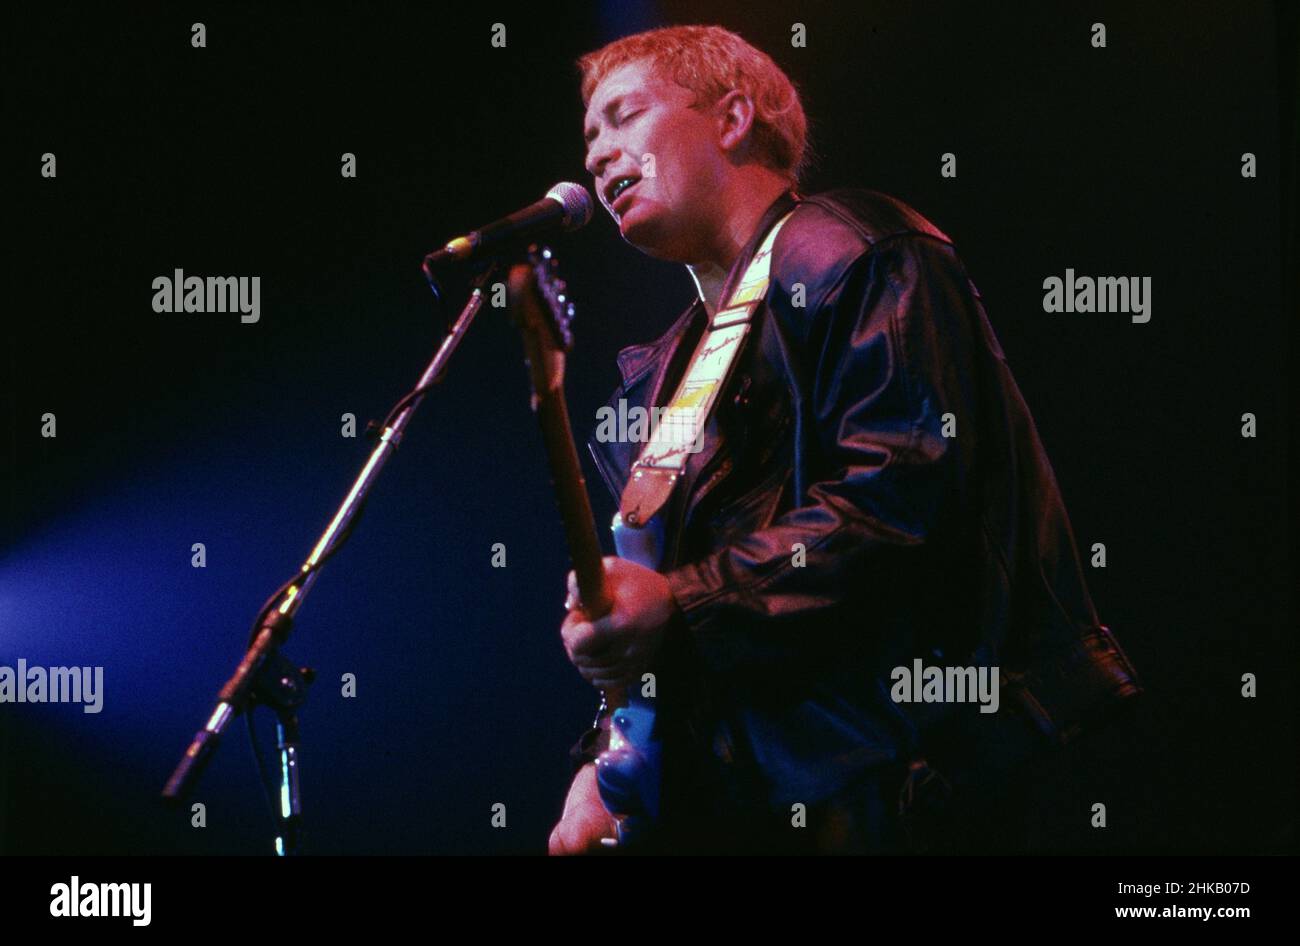 Chris Rea, britischer Sänger, Komponist und Gitarrist, bein einem Auftritt, Deutschland 1988. Stock Photo